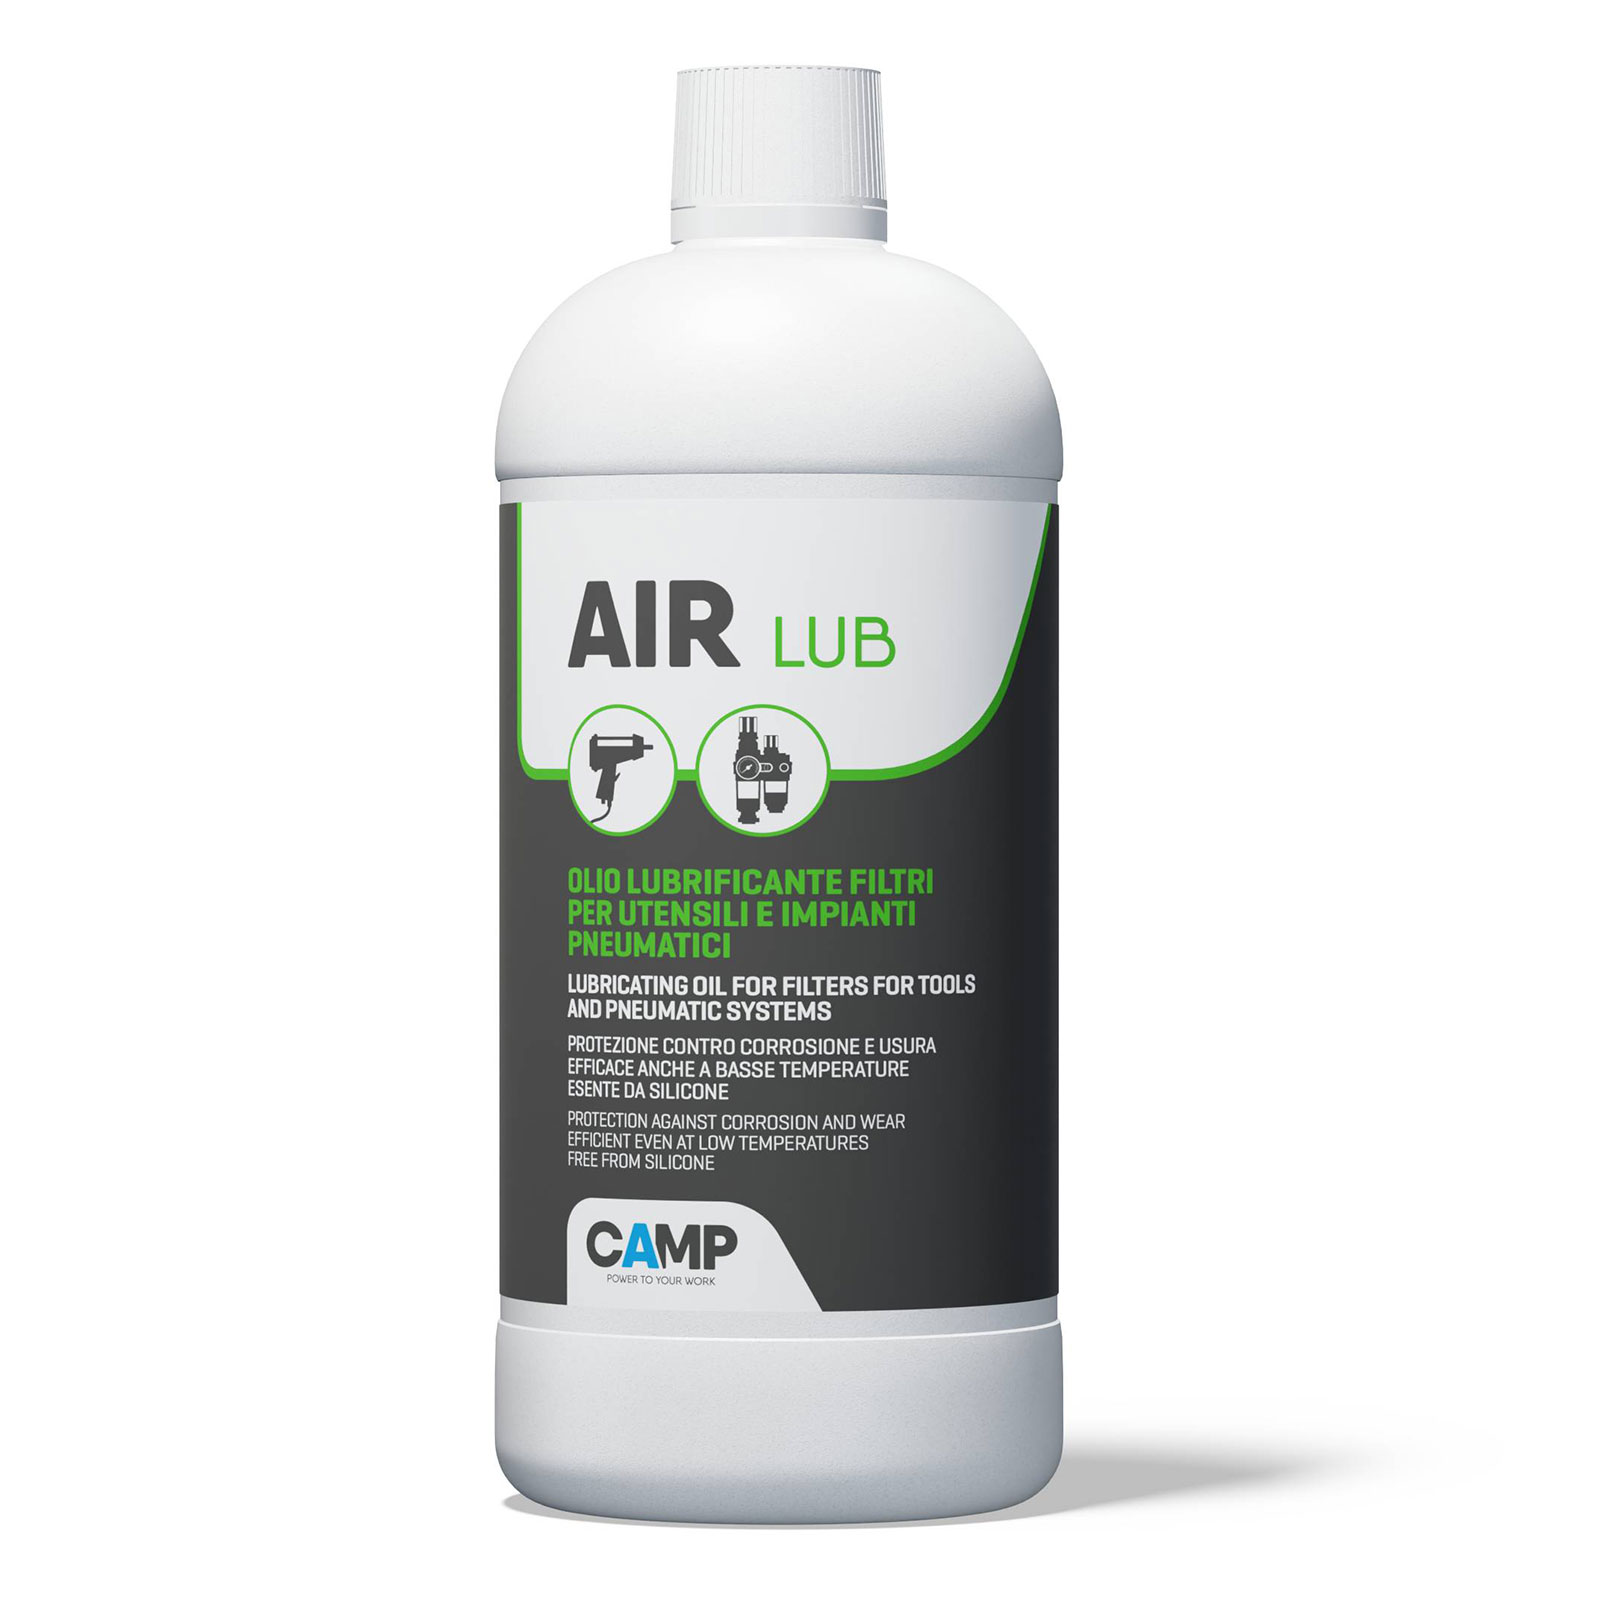 Link spray aria compressa in confezione 400 ml.